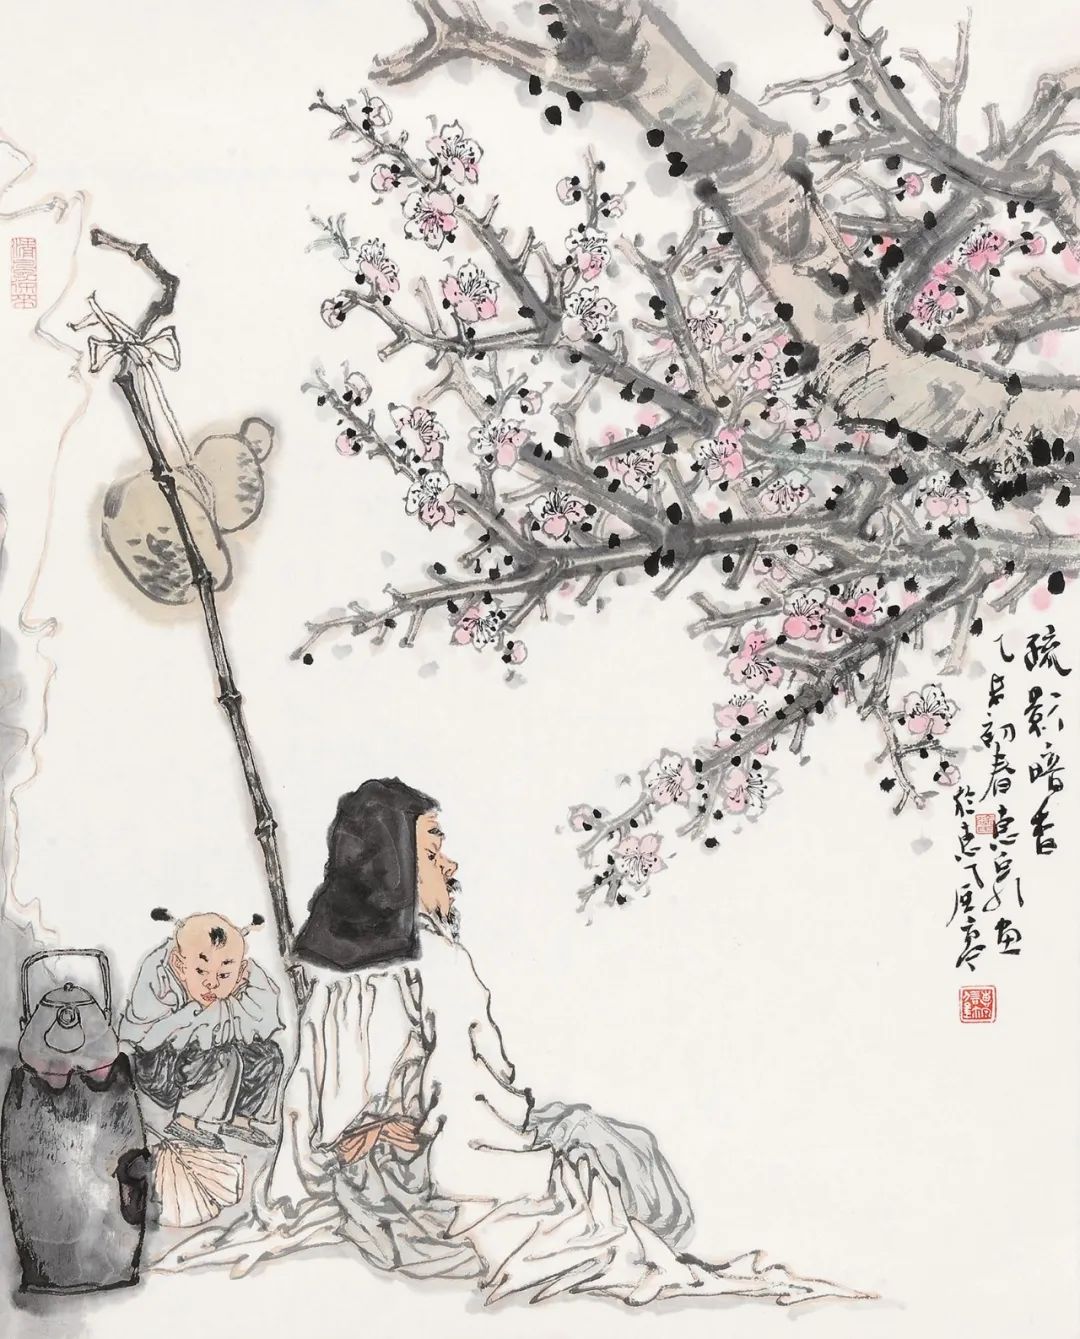 柔美多姿仪态万方著名画家徐惠泉以工笔重彩将东方女性的美跃然纸上